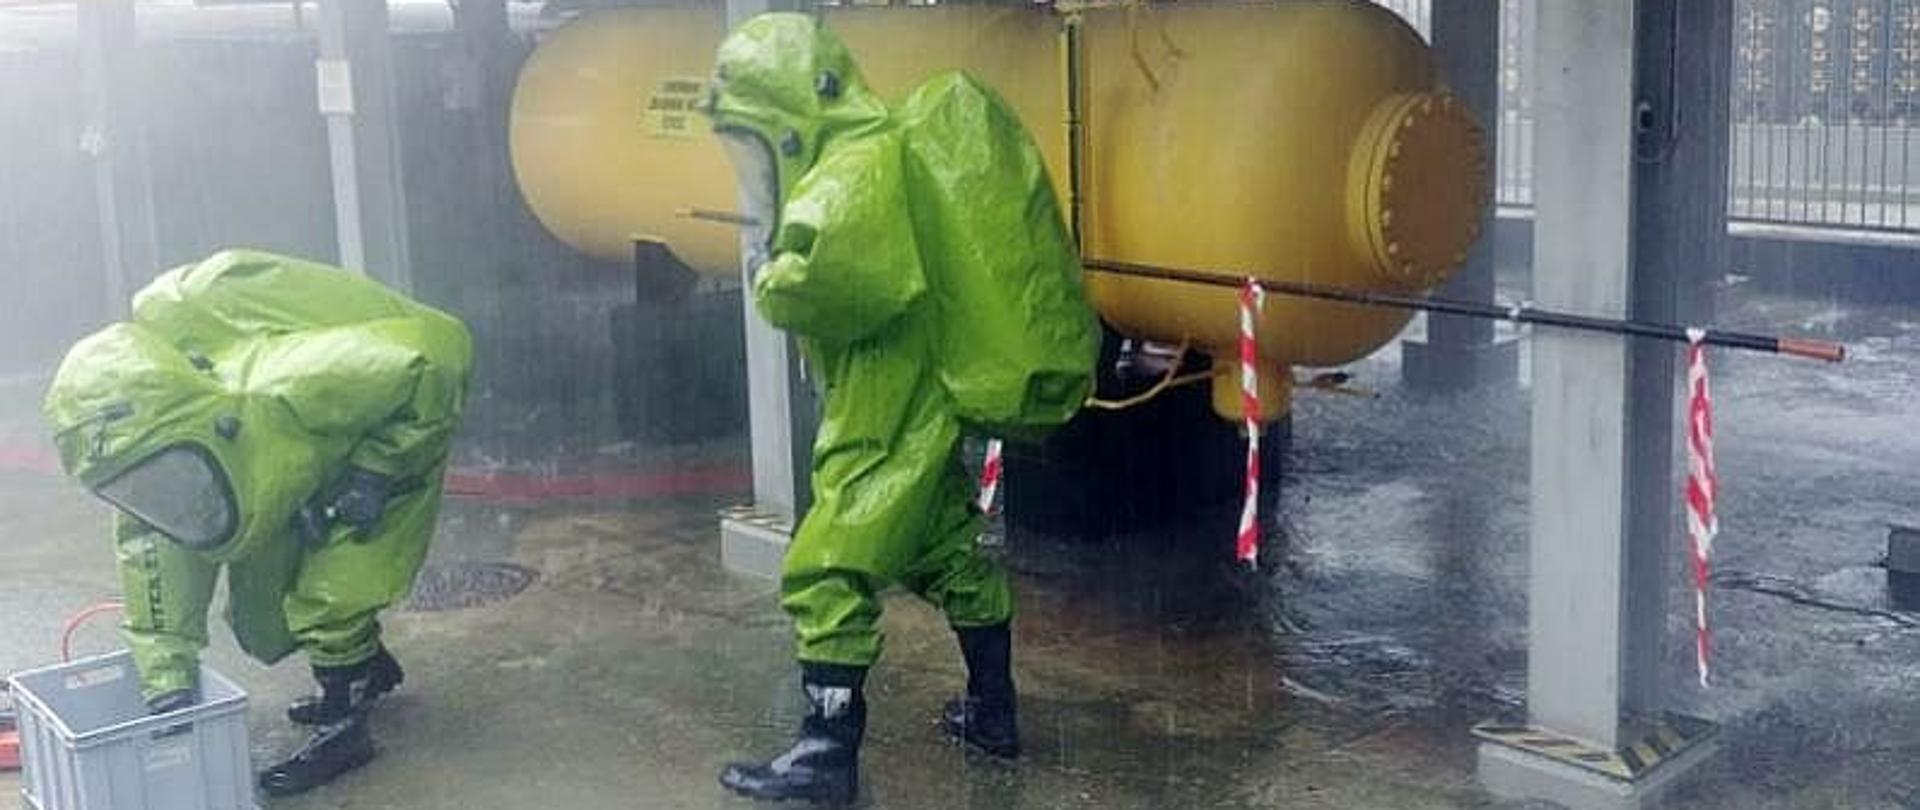 Dwóch ratowników podczas ćwiczeń z uszczelniania instalacji z amoniakiem. Strażacy ubrani są w chemoodporne ubrania chemiczne koloru zielonego, stoją na tle żółtego zbiornika z amoniakiem.